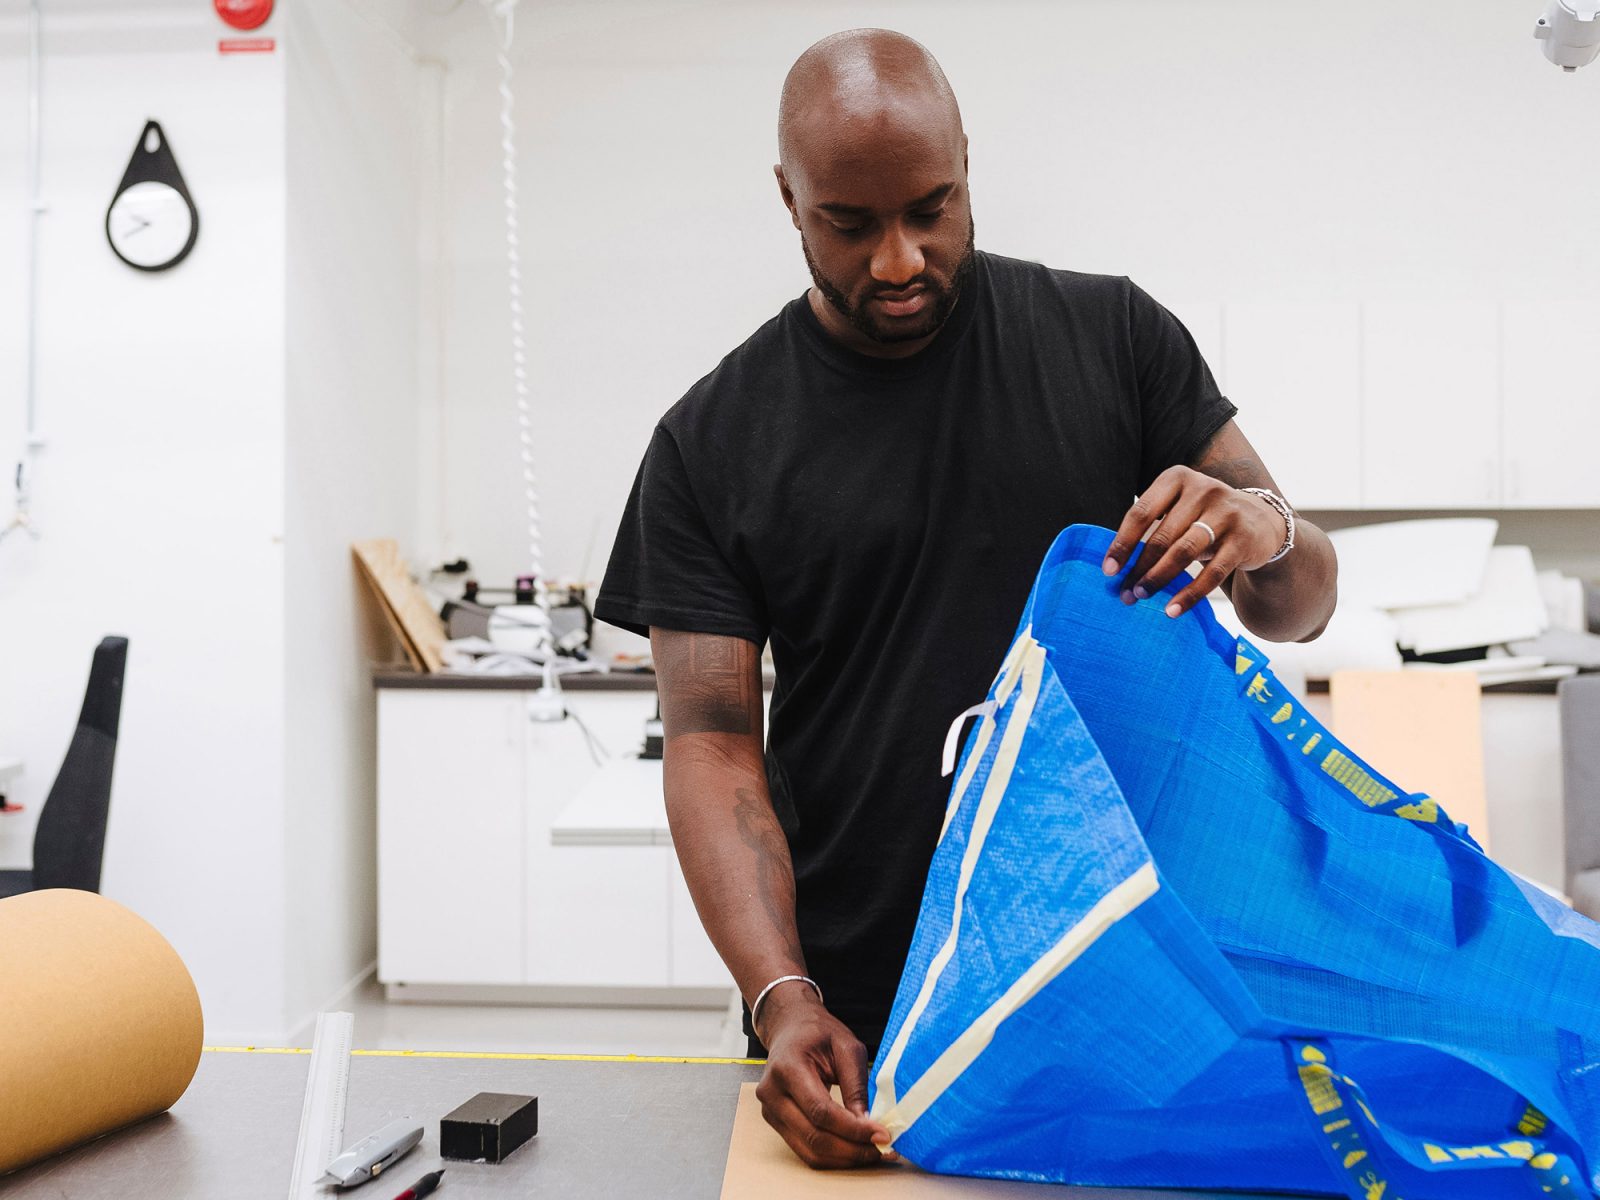 Un hombre con camiseta y cabeza rapada, Virgil Abloh, trabaja en el nuevo diseño de una bolsa azul FRAKTA en un taller.